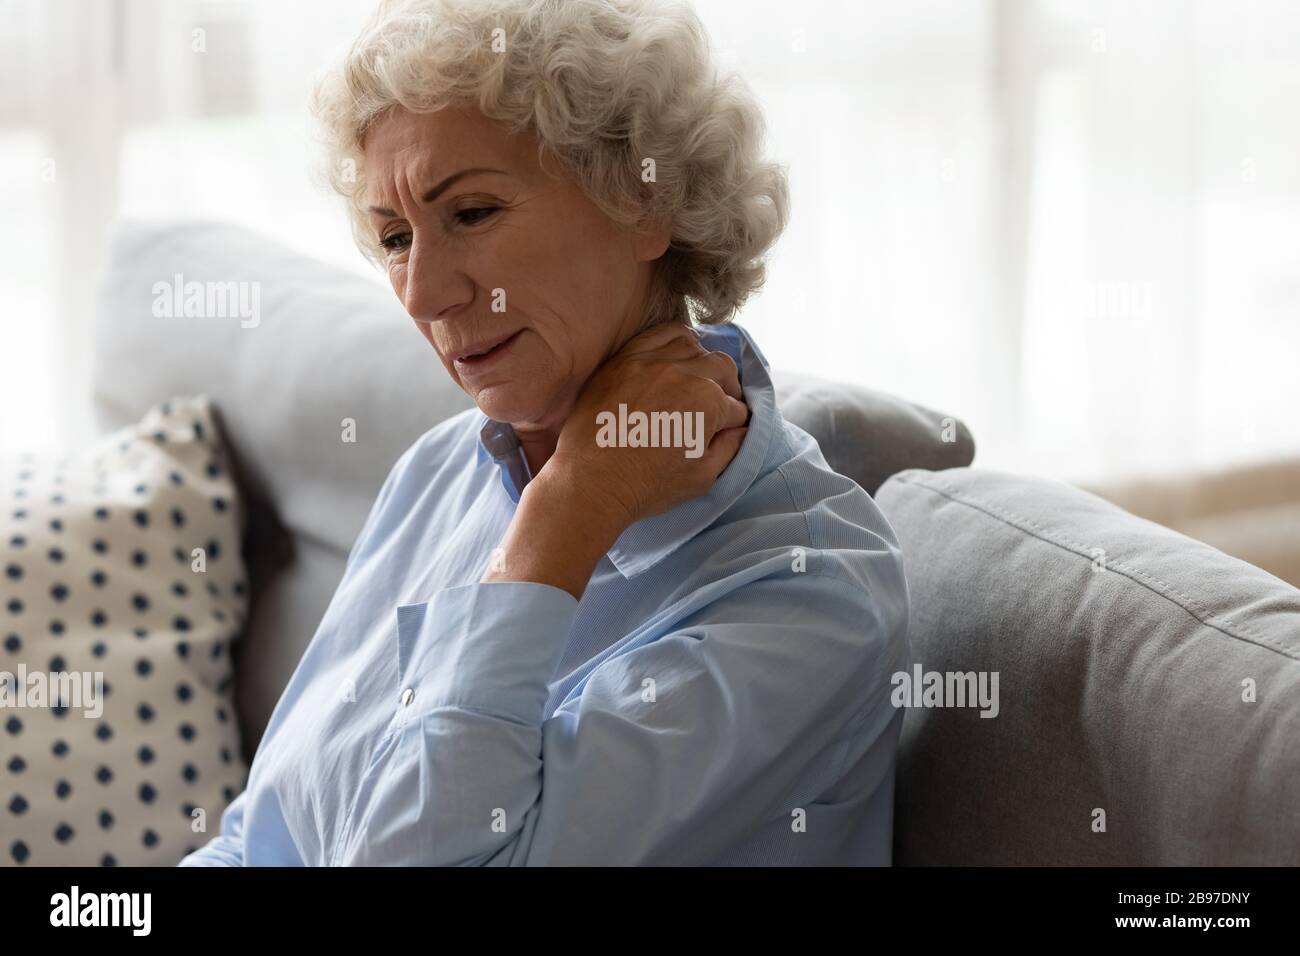 La anciana enferma se sienta en el sofá sufriendo de dolor de cuello Foto de stock